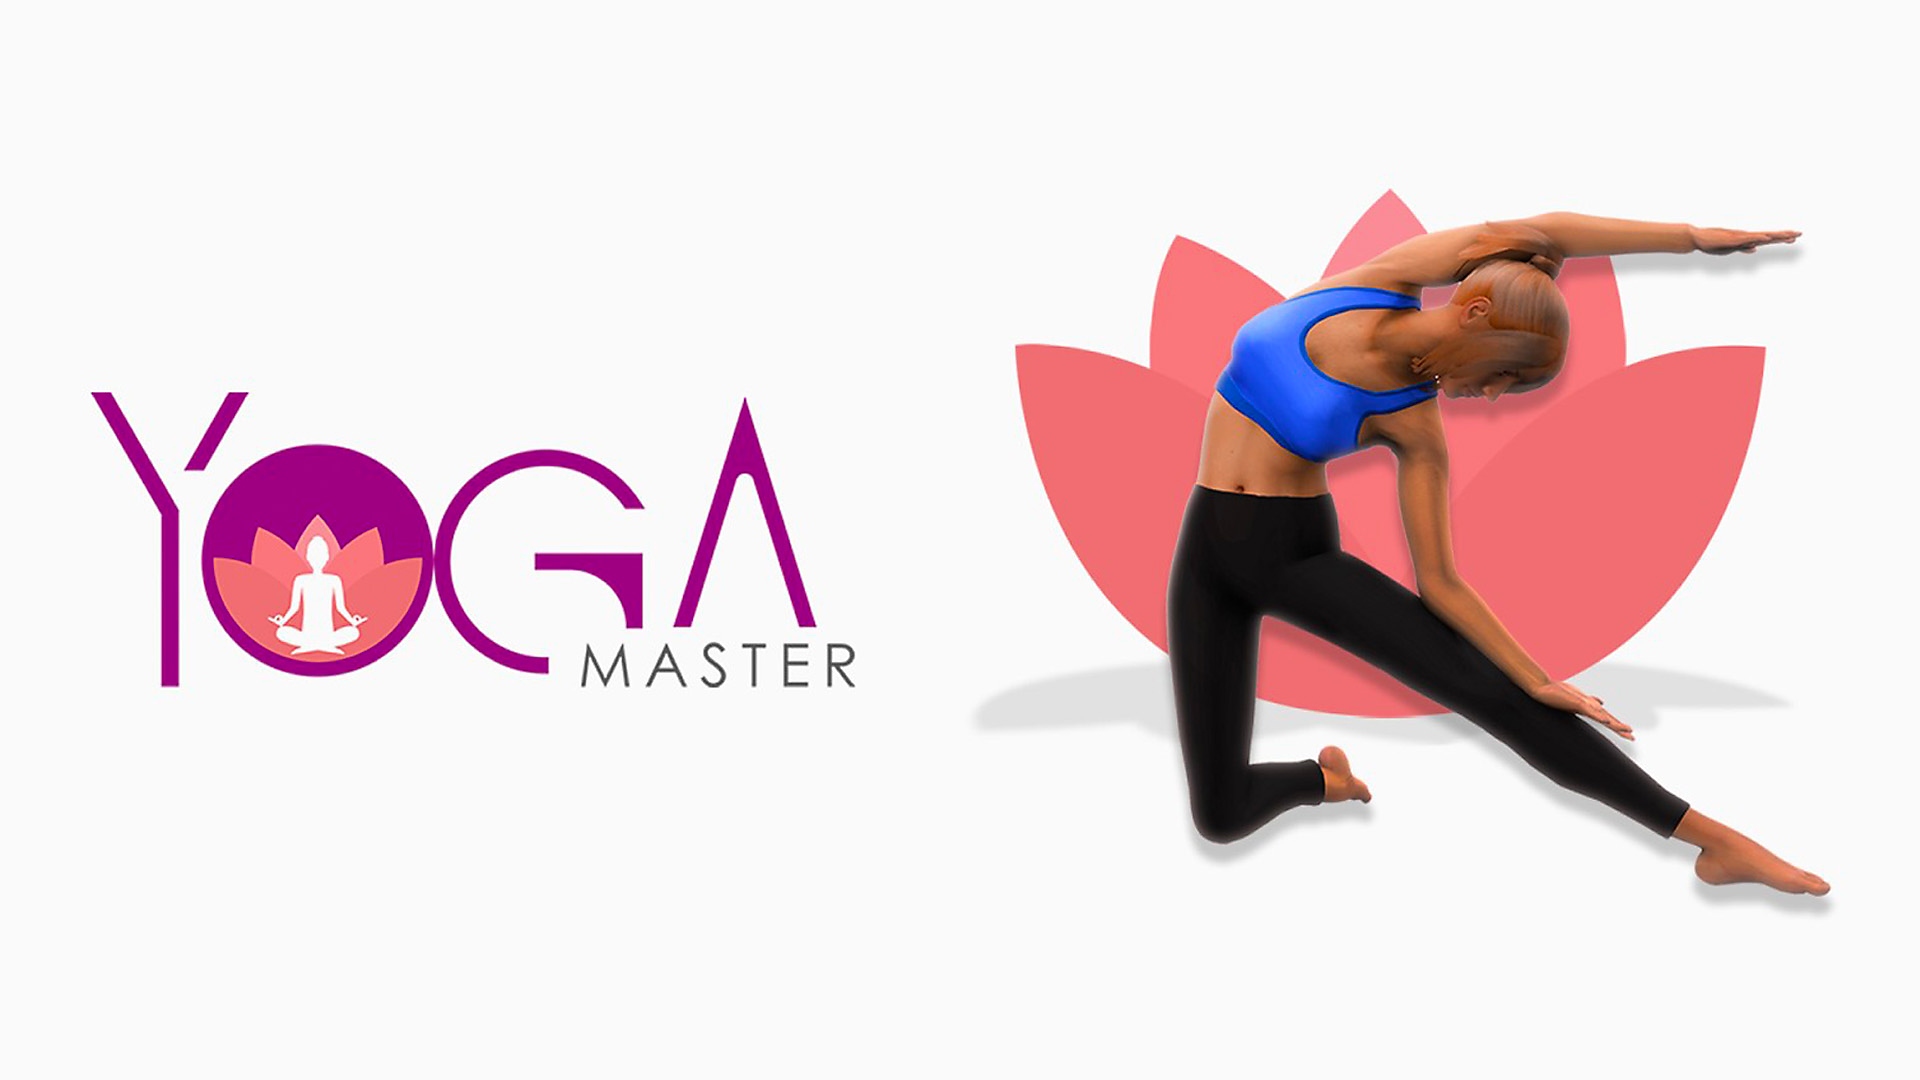 Yoga Master – slikovno gradivo